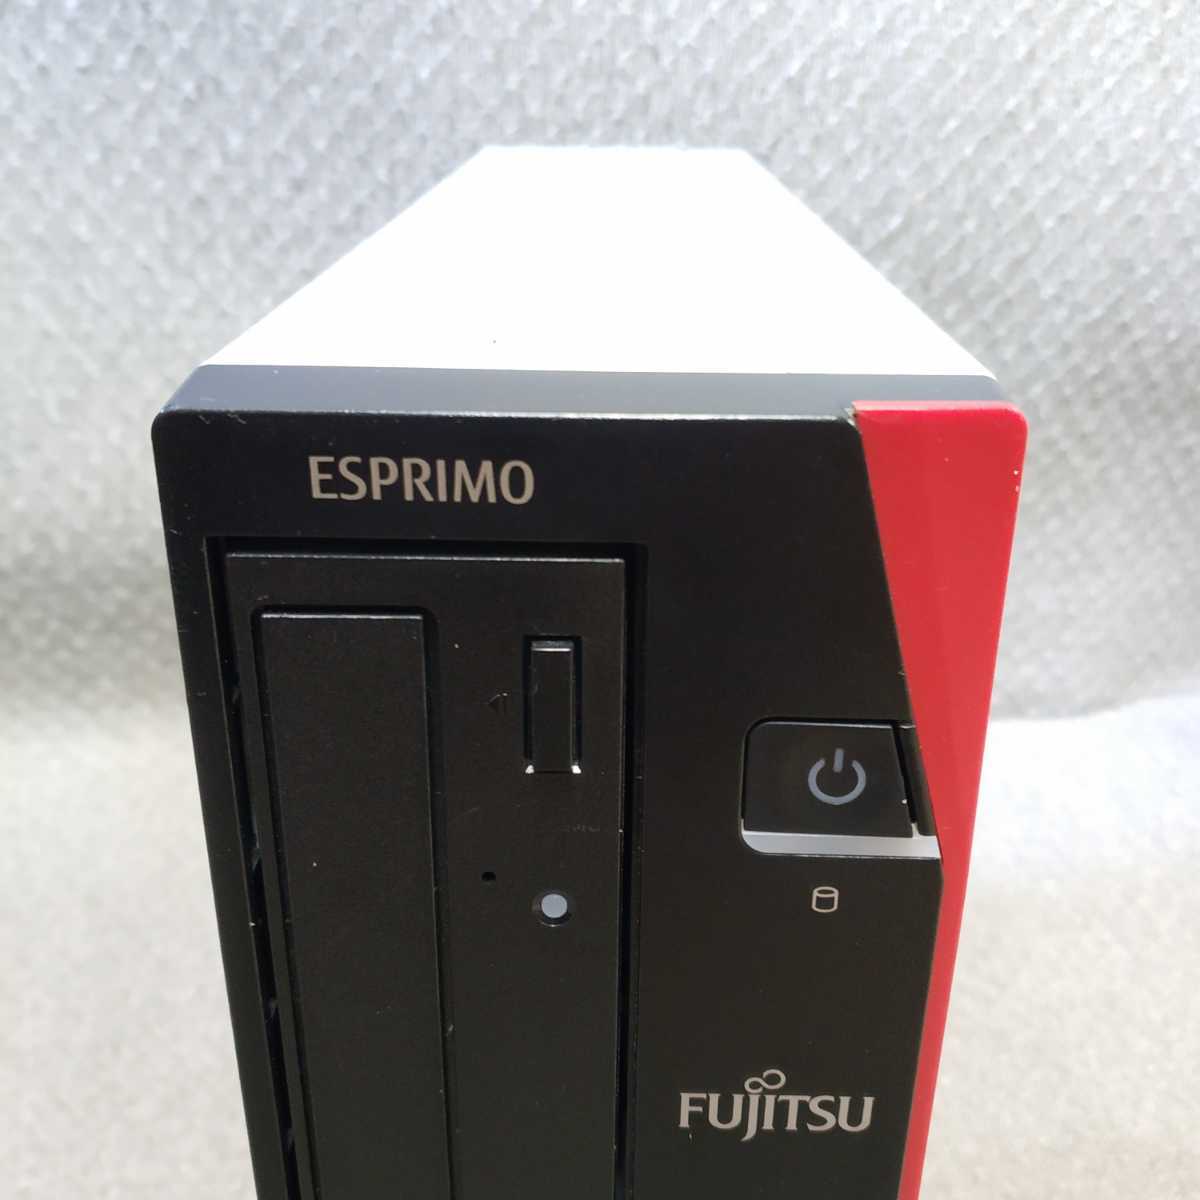 Windows 7*10*11 OS выбор возможно FUJITSU Fujitsu ESPRIMO D588/VX Core i7-8700 3.20GHz/ память 8GB/ новый товар SSD256GB/USB3.0/ восстановление - изготовление /T068c